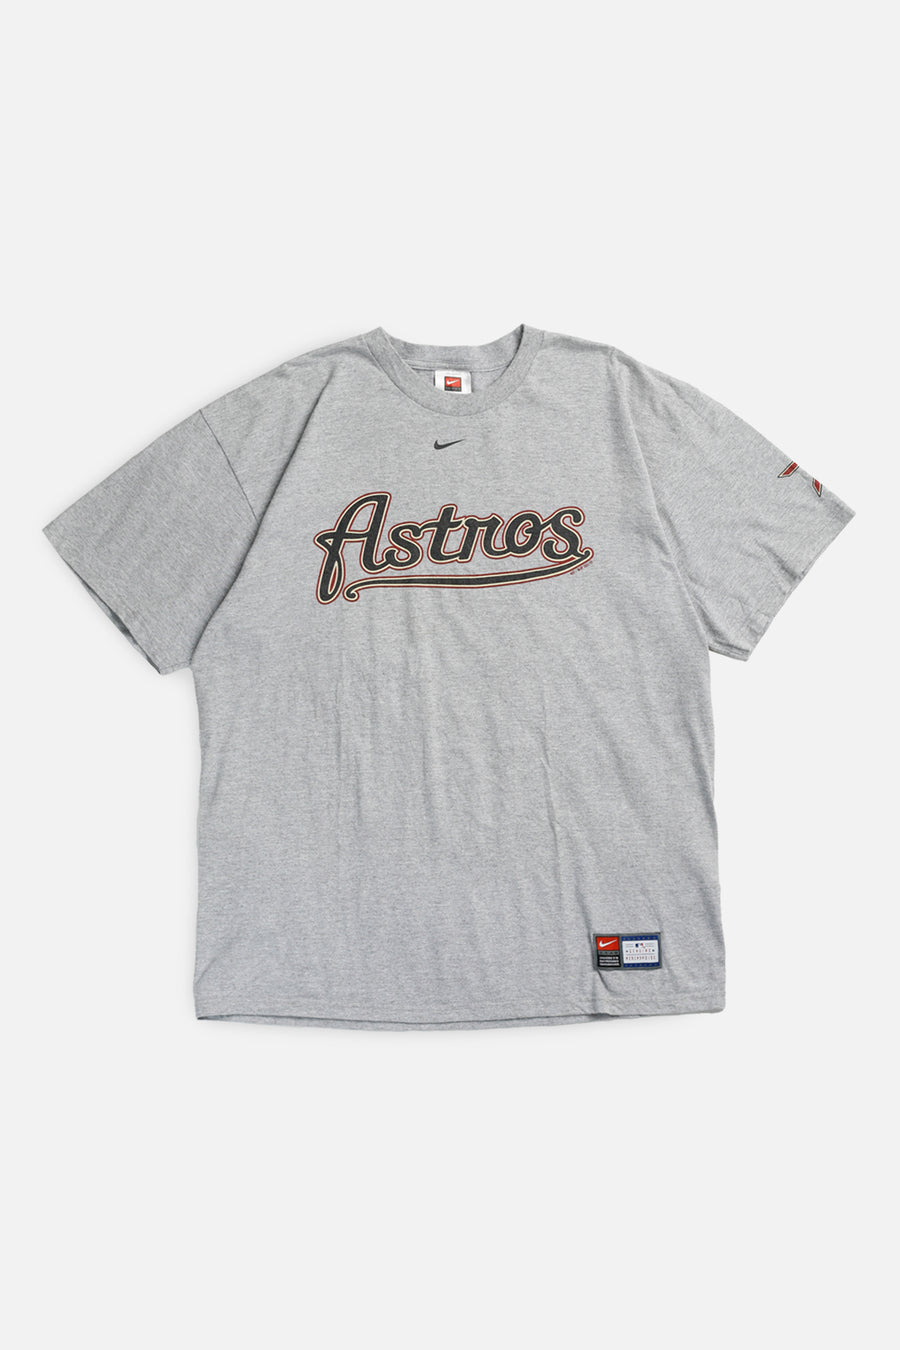 Vintage Houston Astros MLB Tee - L